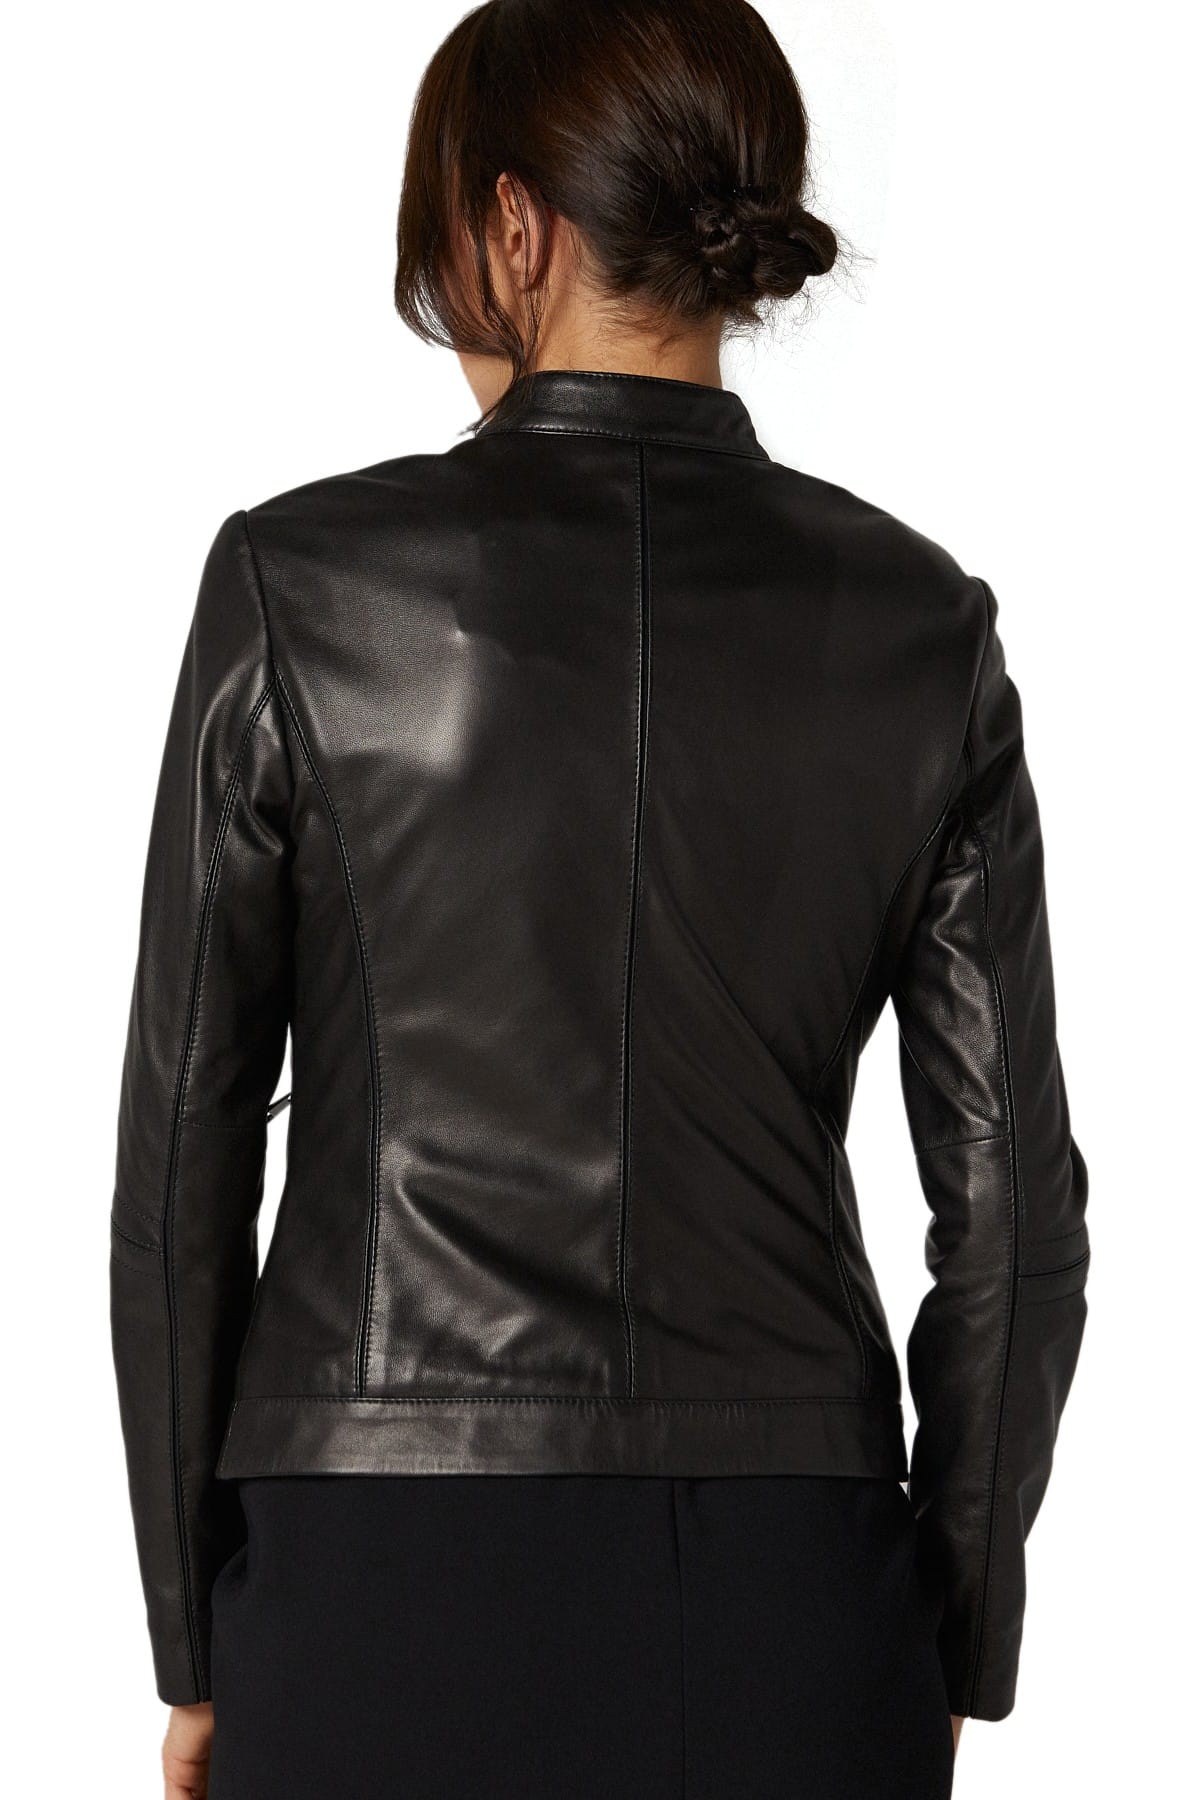 lady leather motorcycle jacket